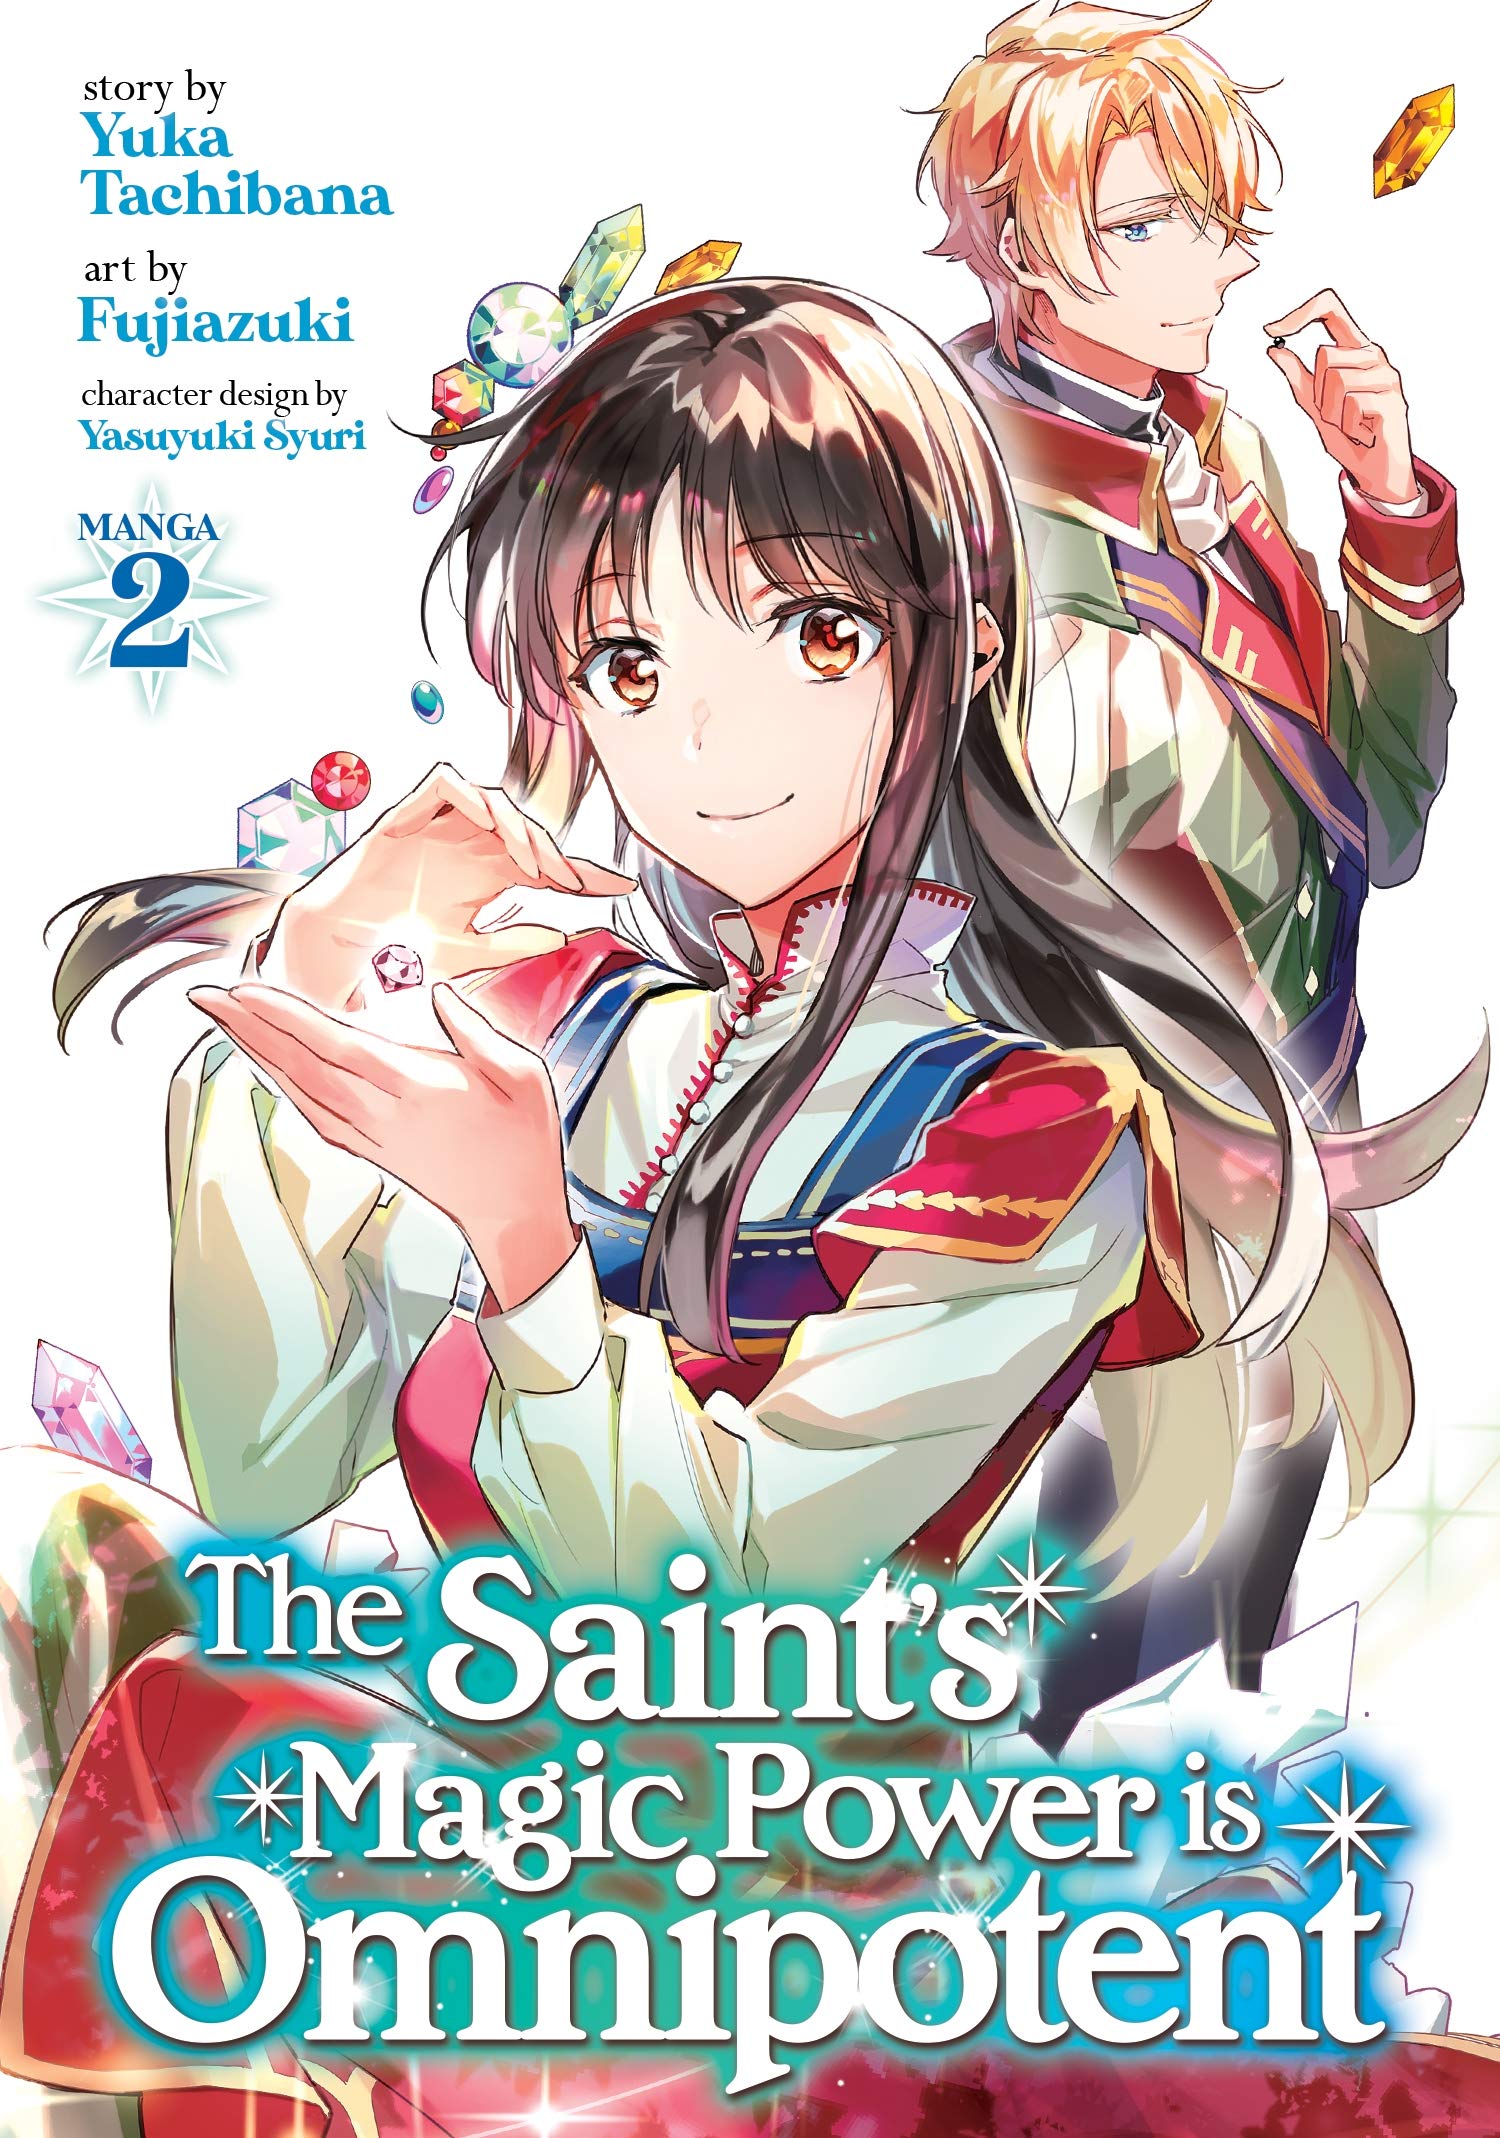 The Saint's Magic Power is Omnipotent (Manga) Vol. 2 (The Saint's Magic Power is Omnipotent (Manga), 2): Tachibana, Yuka, Fujiazuki: Books